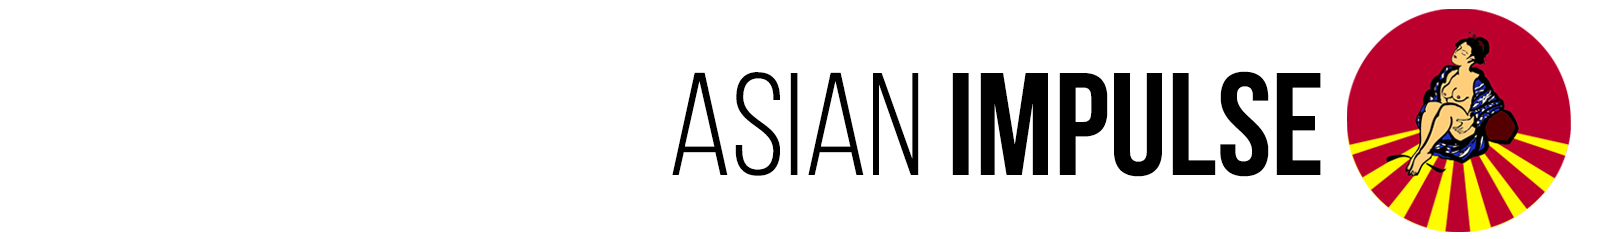 Asian Impulse